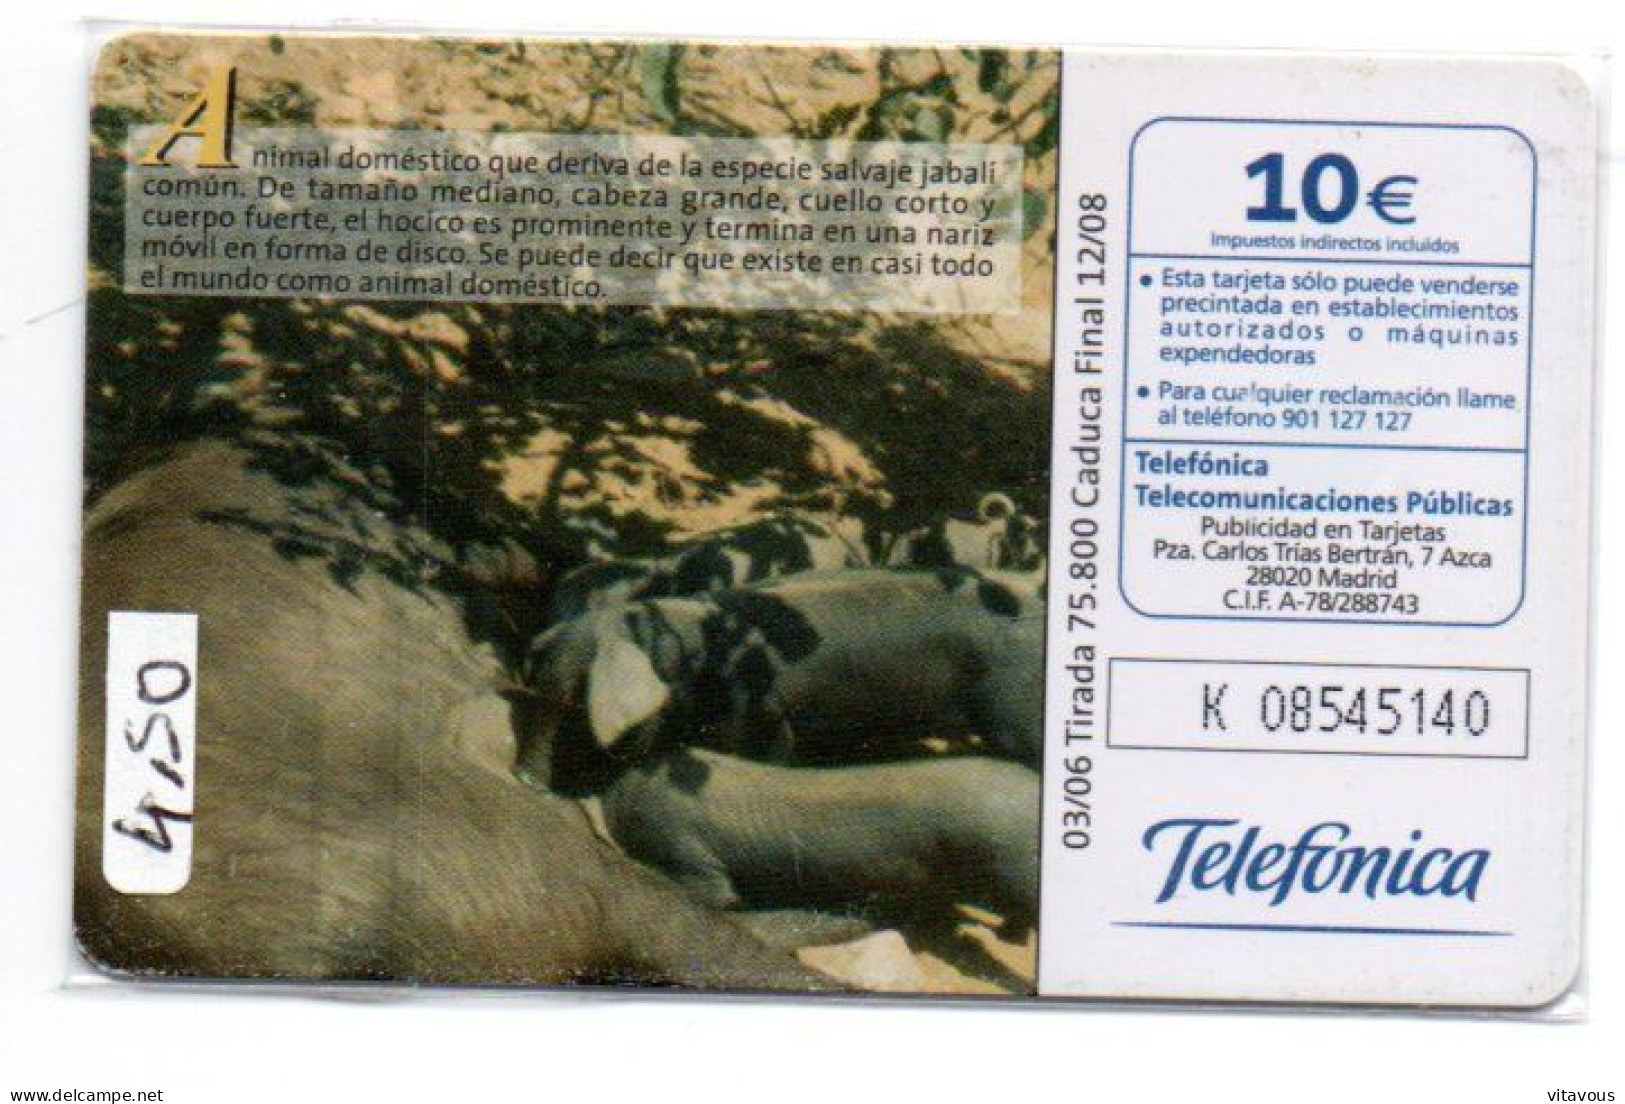 Cerdo Domèstico - Sus Domesticus Télécarte Fauna Ibérica Phonecard  Telefonkarten  (K 10) - Emisiones Básicas